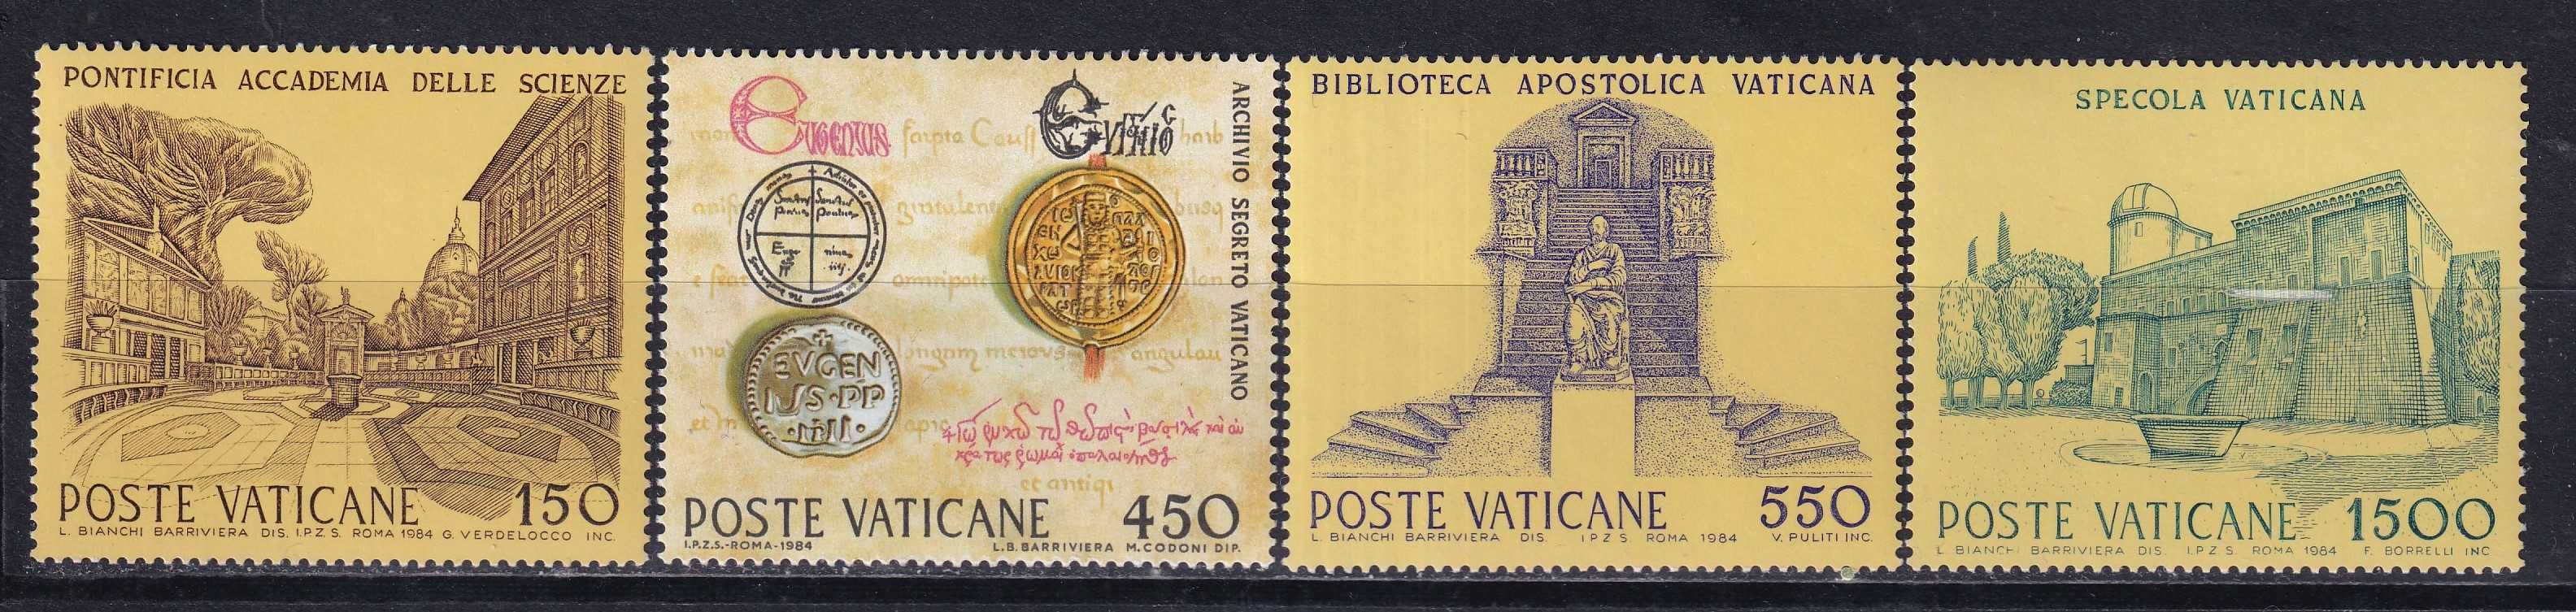 Watykan 1984 cena 2,90 zł kat.3,25€